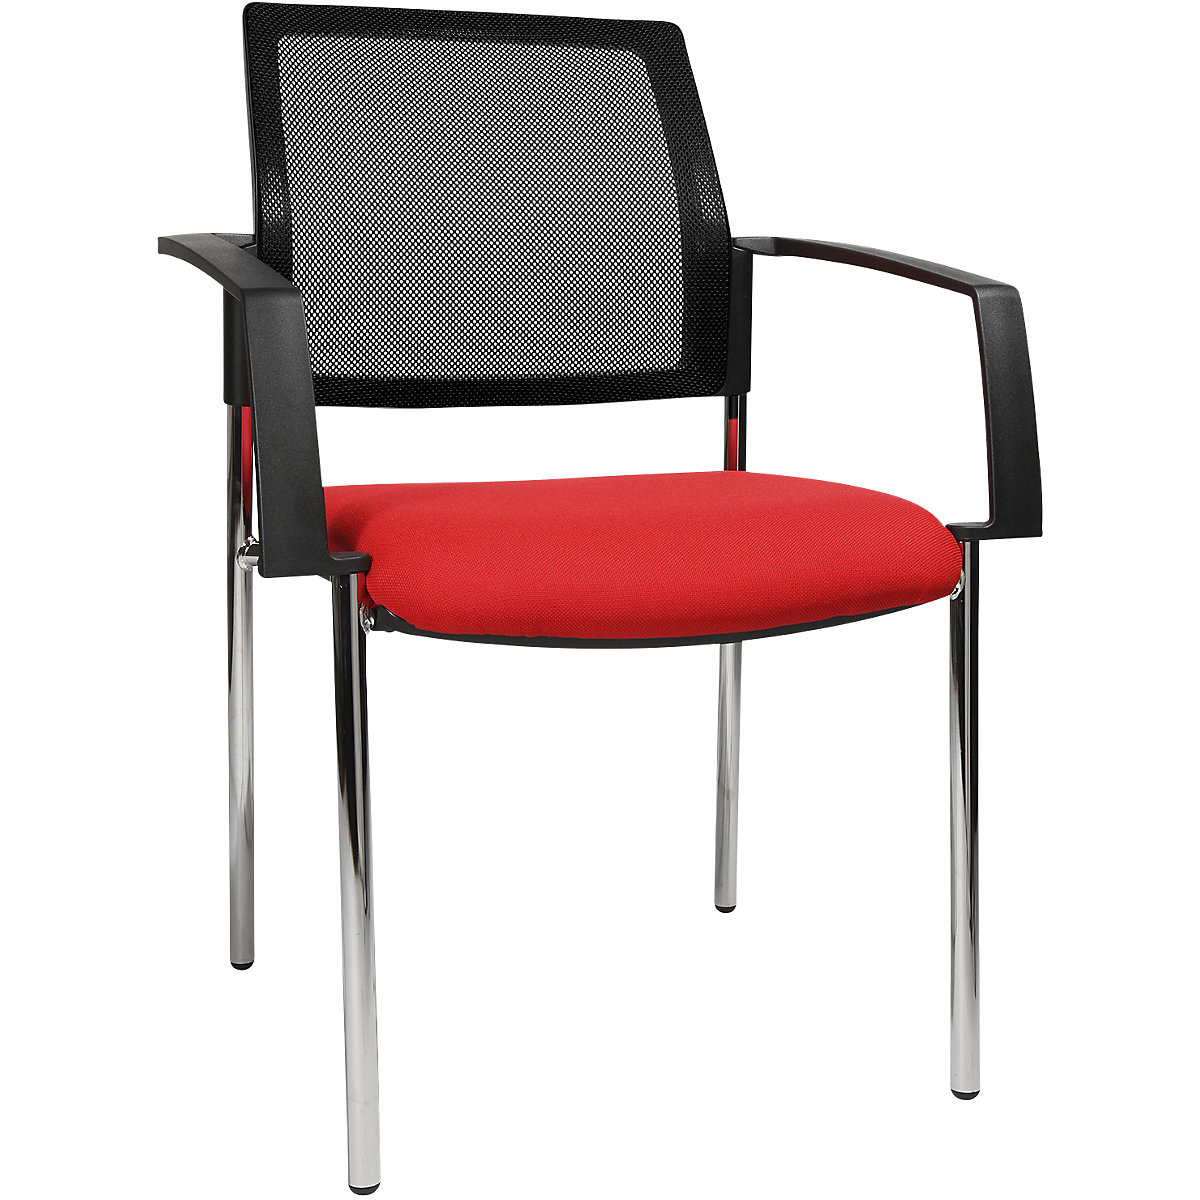 Síťovaná stohovací židle – Topstar, 4 nohy, bal.j. 2 ks, červený sedák, pochromovaný podstavec-5